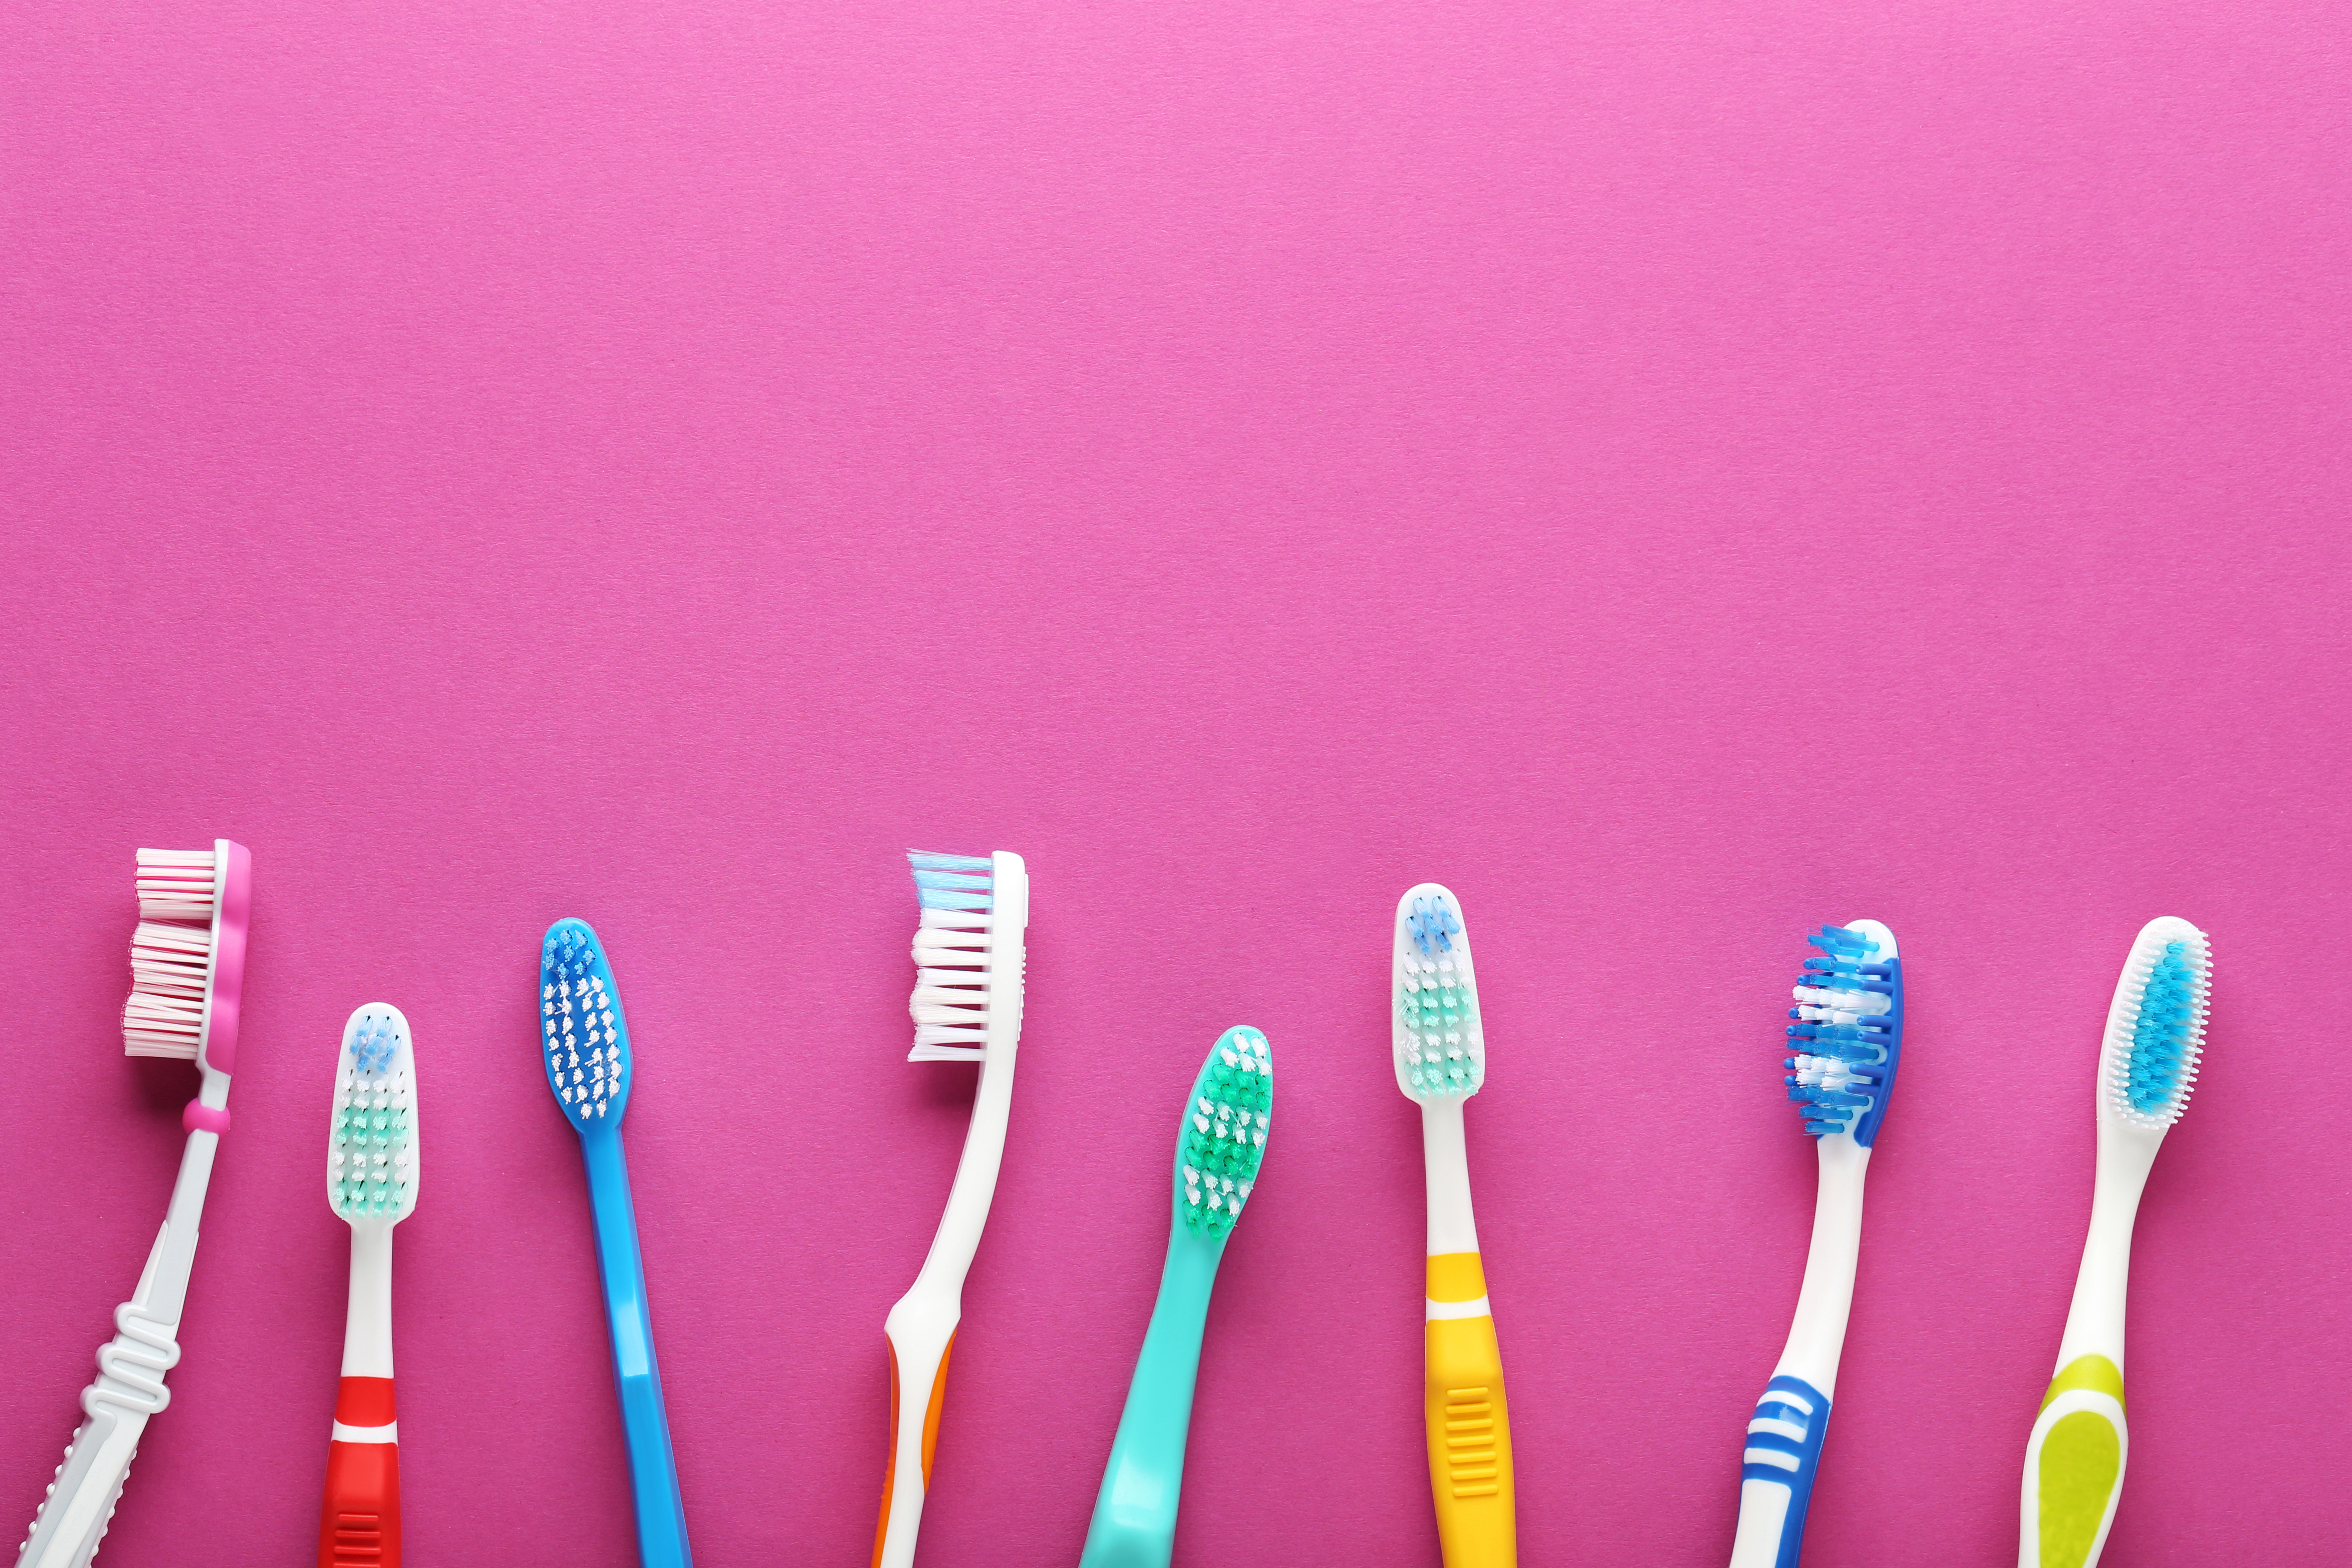 Tootbrushes on pink background